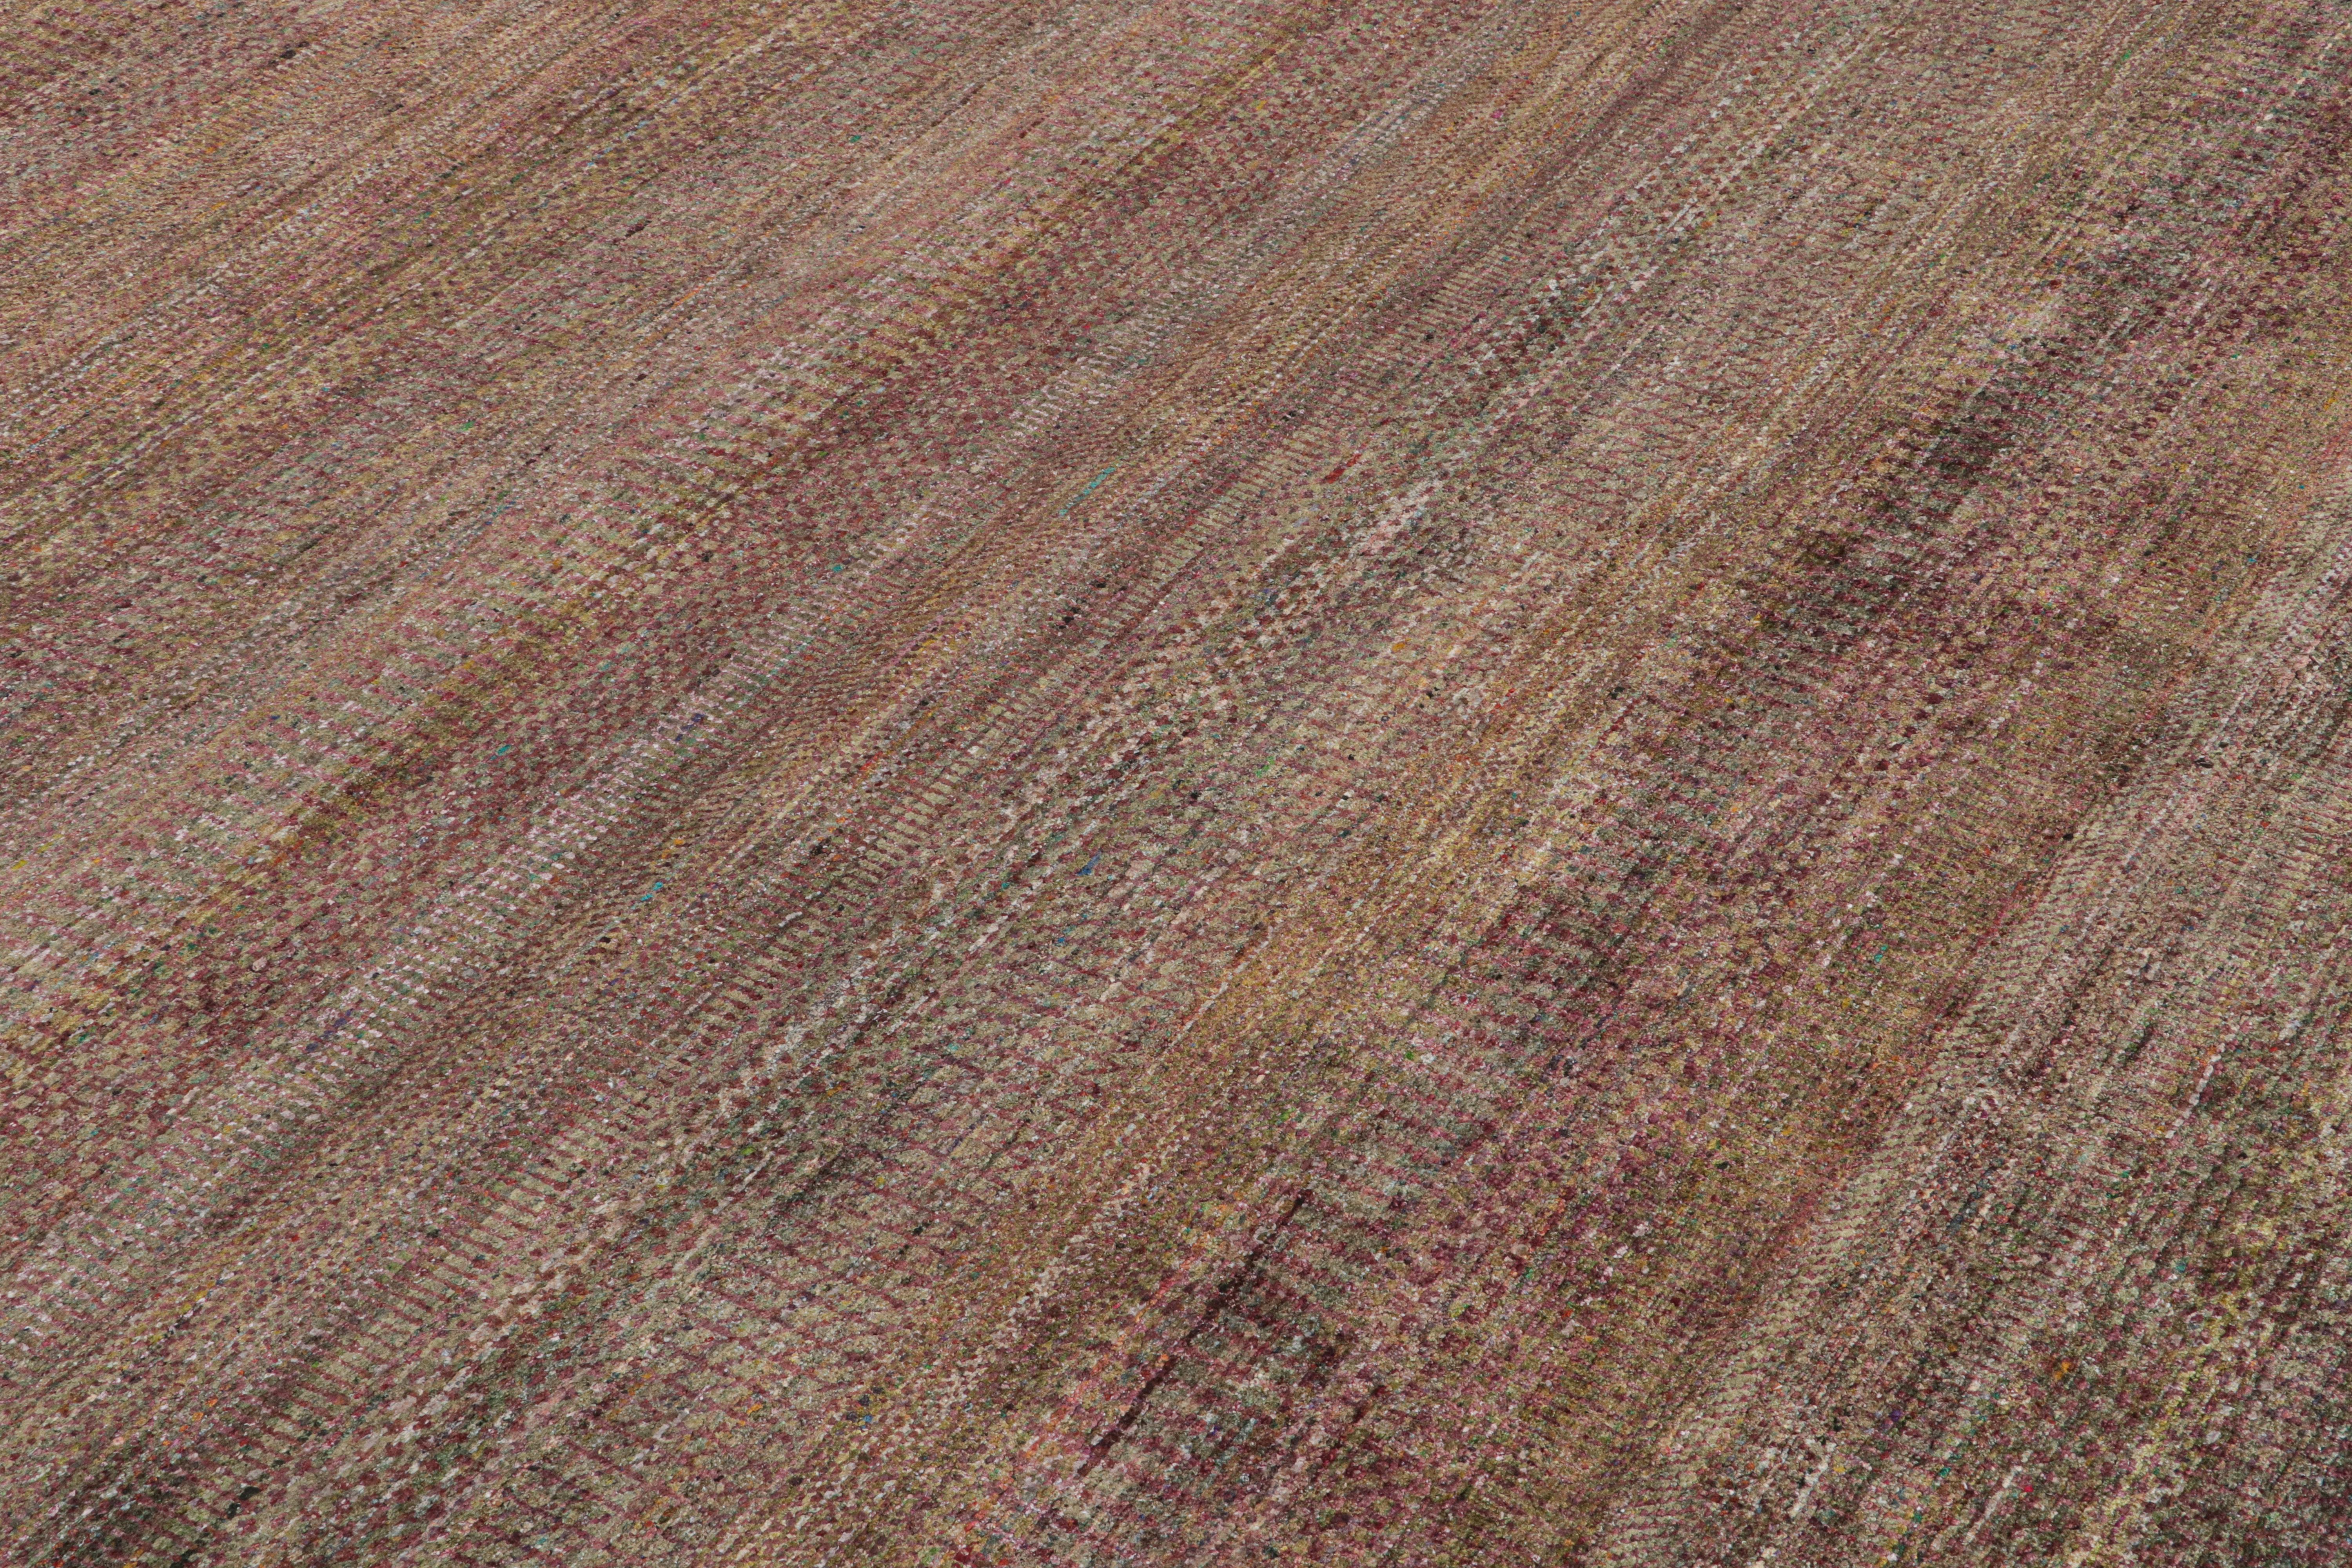 Dieser 8x10 große Strukturteppich ist eine aufregende Neuheit in der Texture of Color Collection'S von Rug & Kilim.

Über das Design:

Dieser Teppich aus handgeknüpfter Seide spiegelt eine neue Sichtweise auf das Thema dieser Collection'S wider -